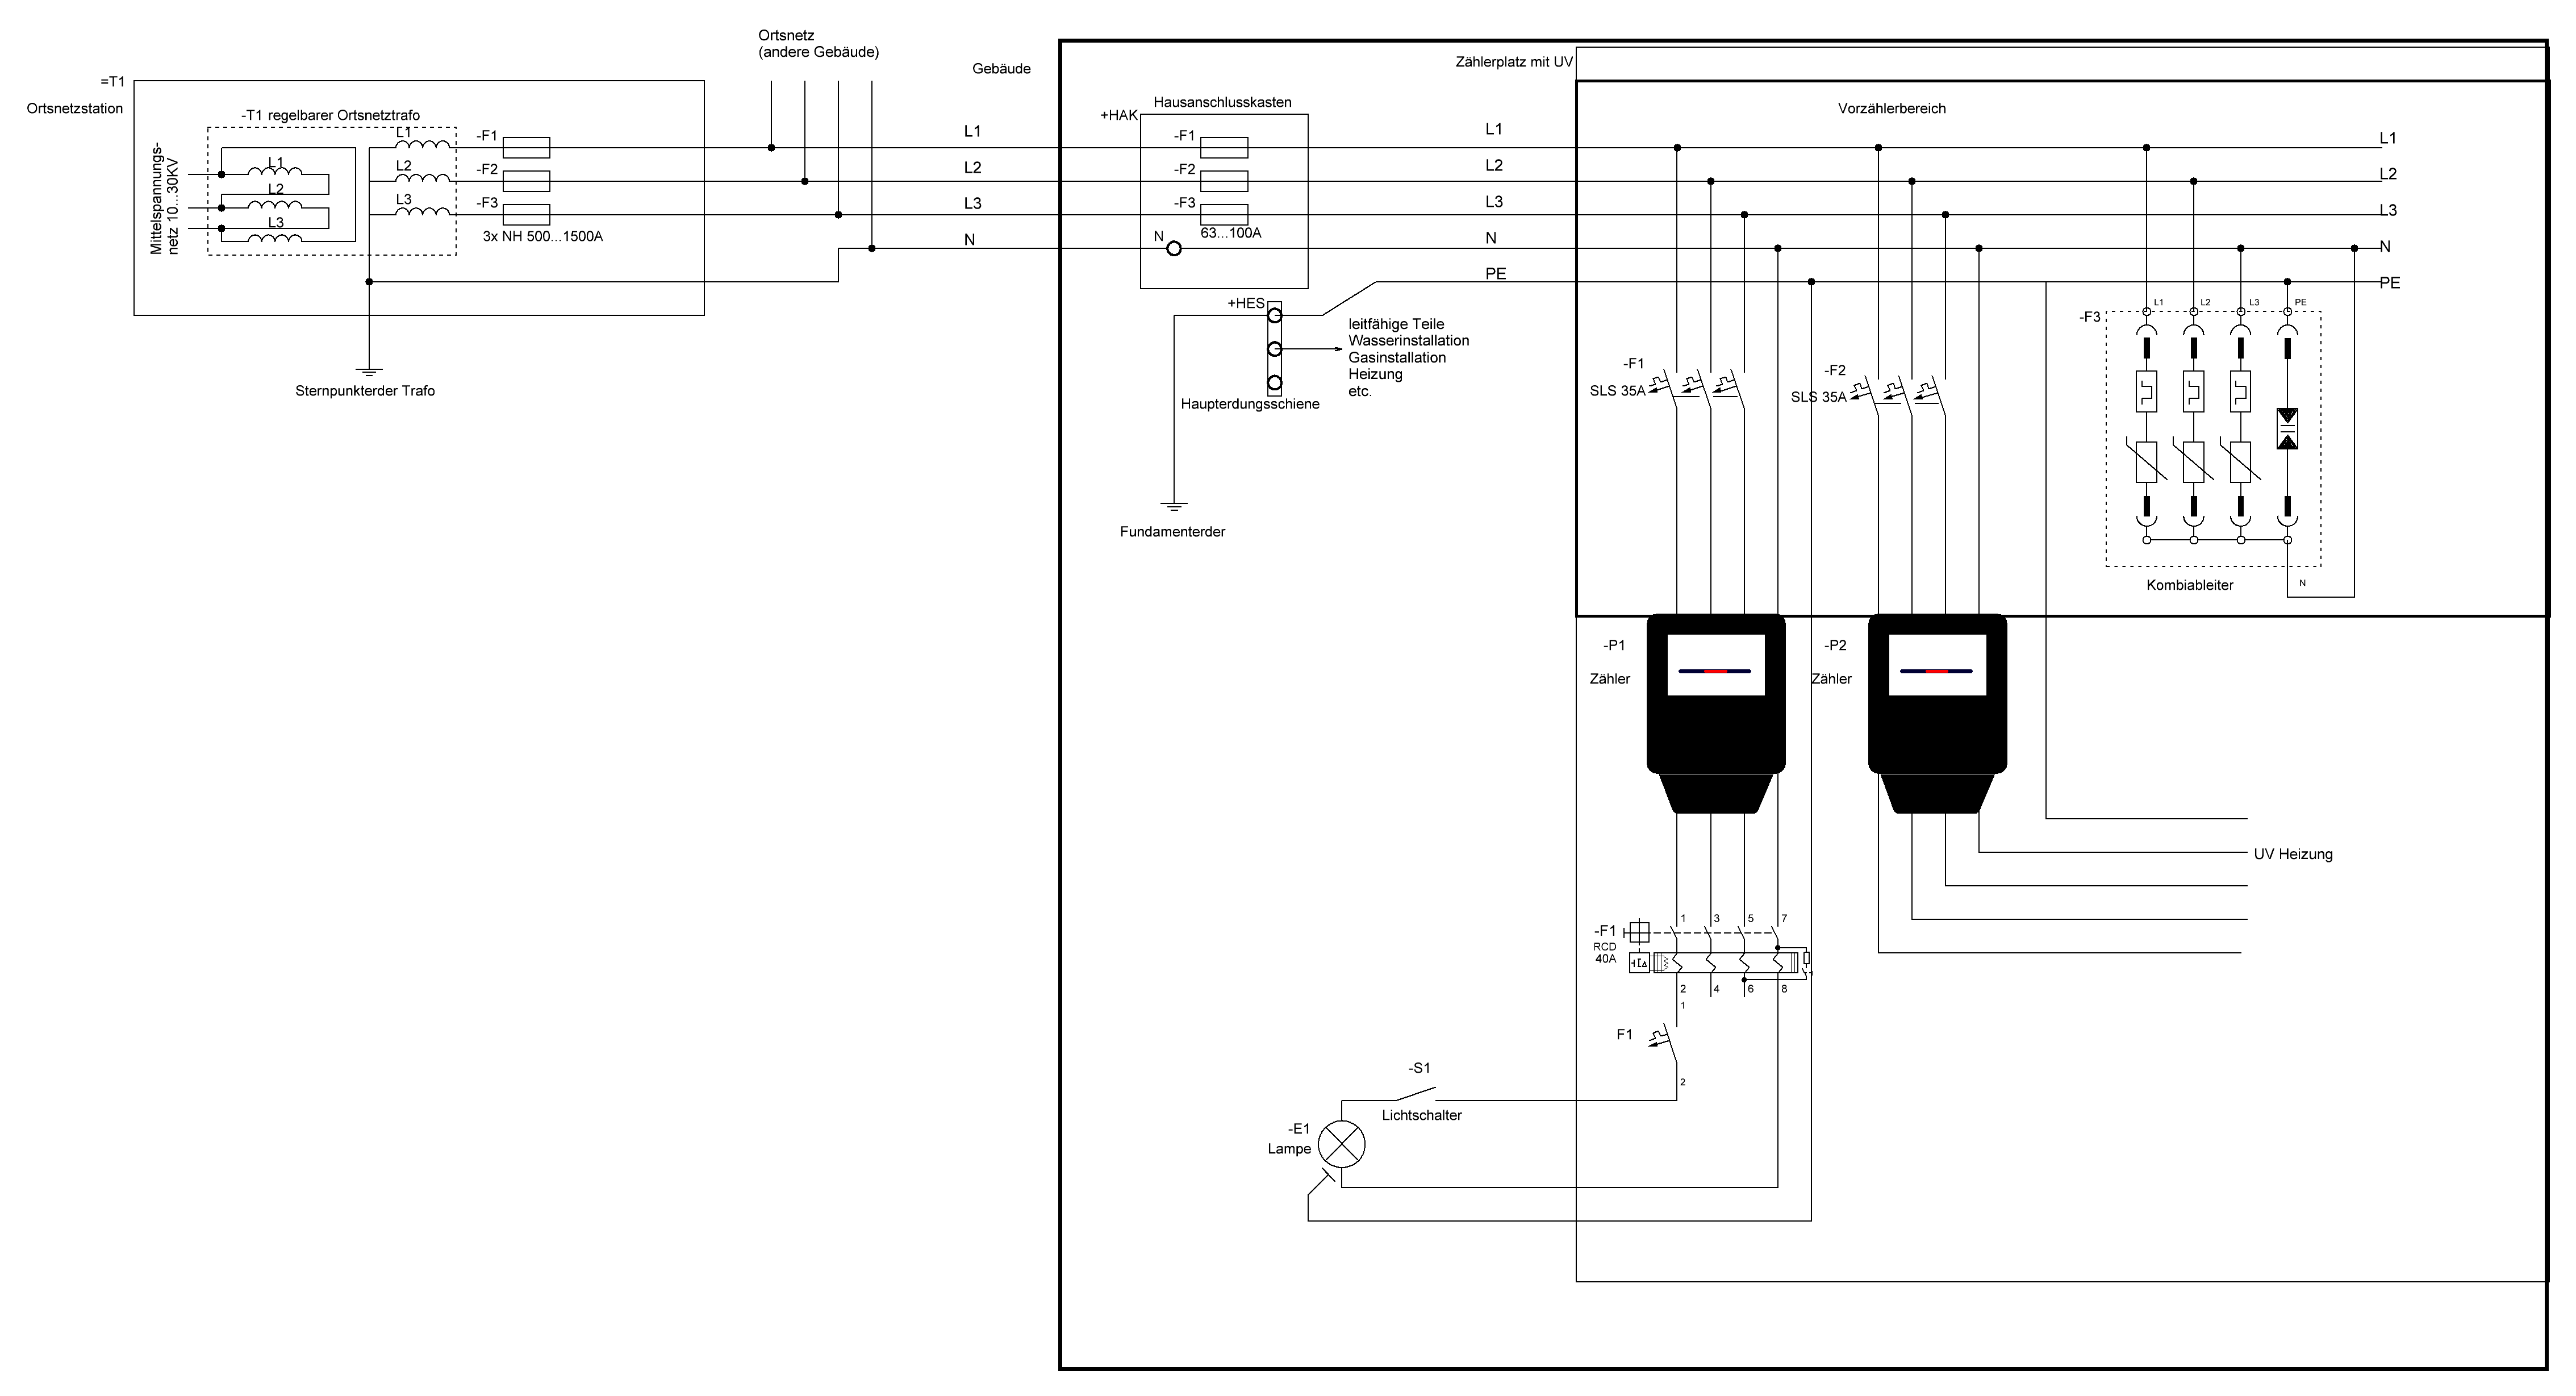 vereinfachte Darstellung einer Gebäudeinstallation im TT-Systems 